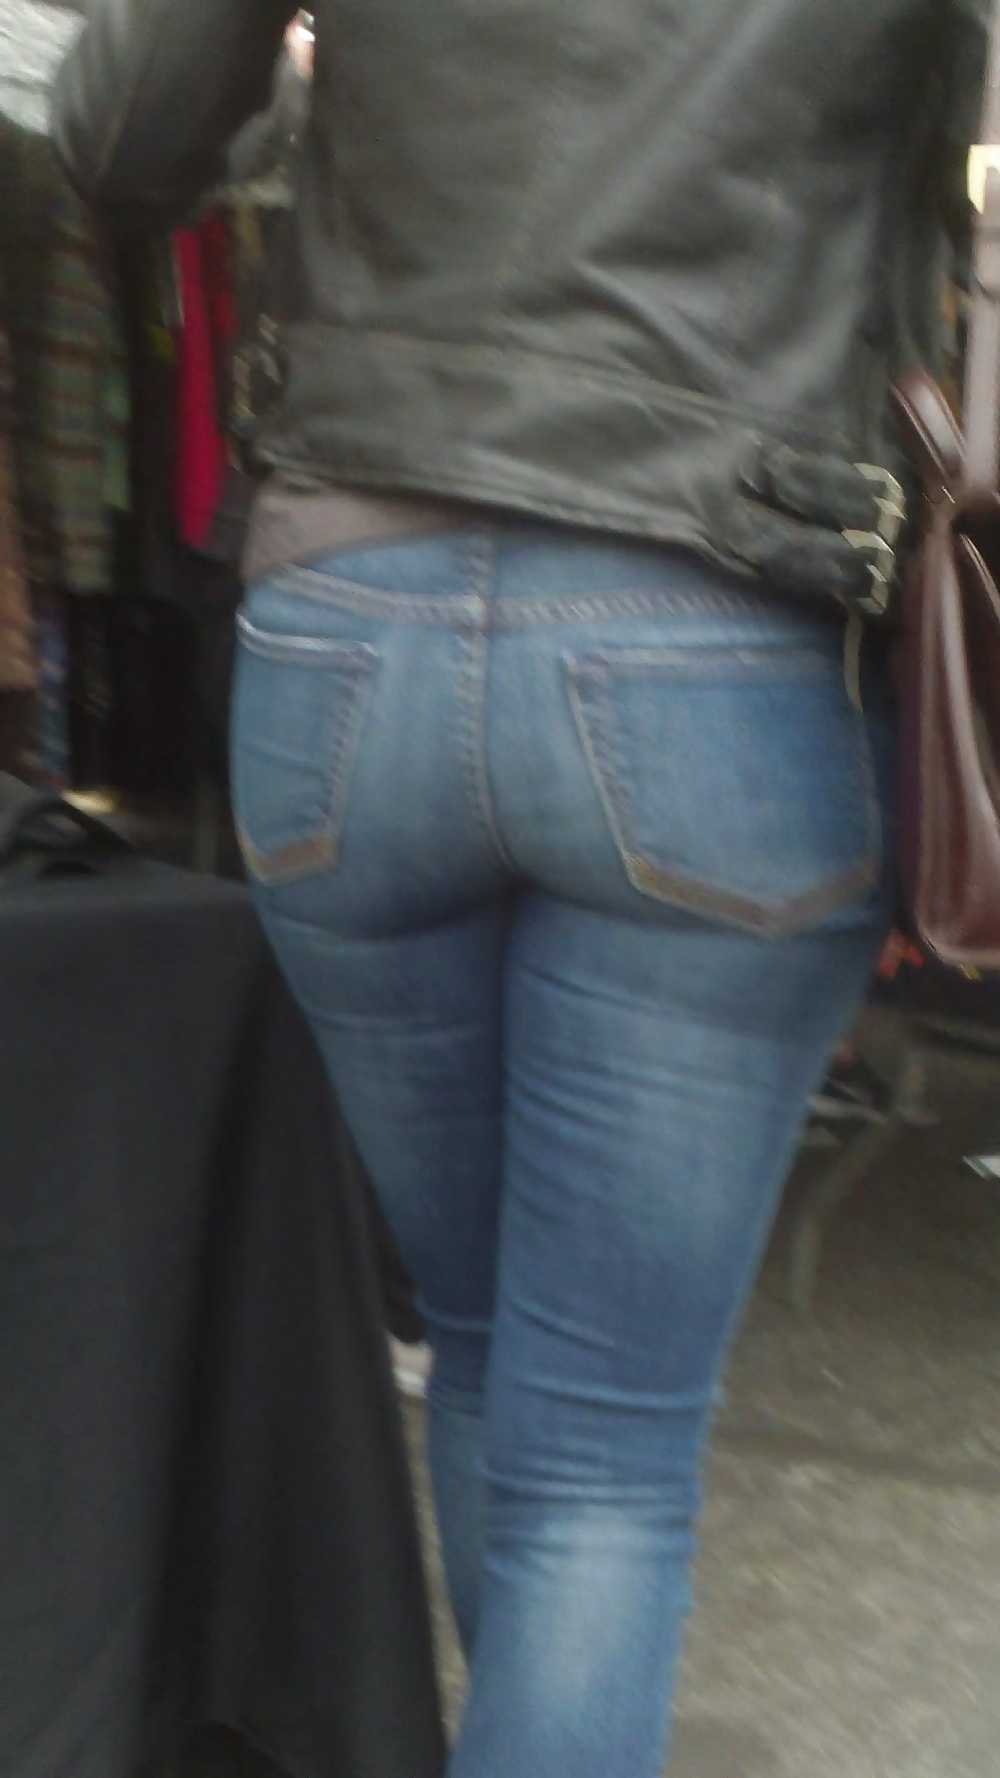 Popular teen girls butts & ass in jeans #21497348